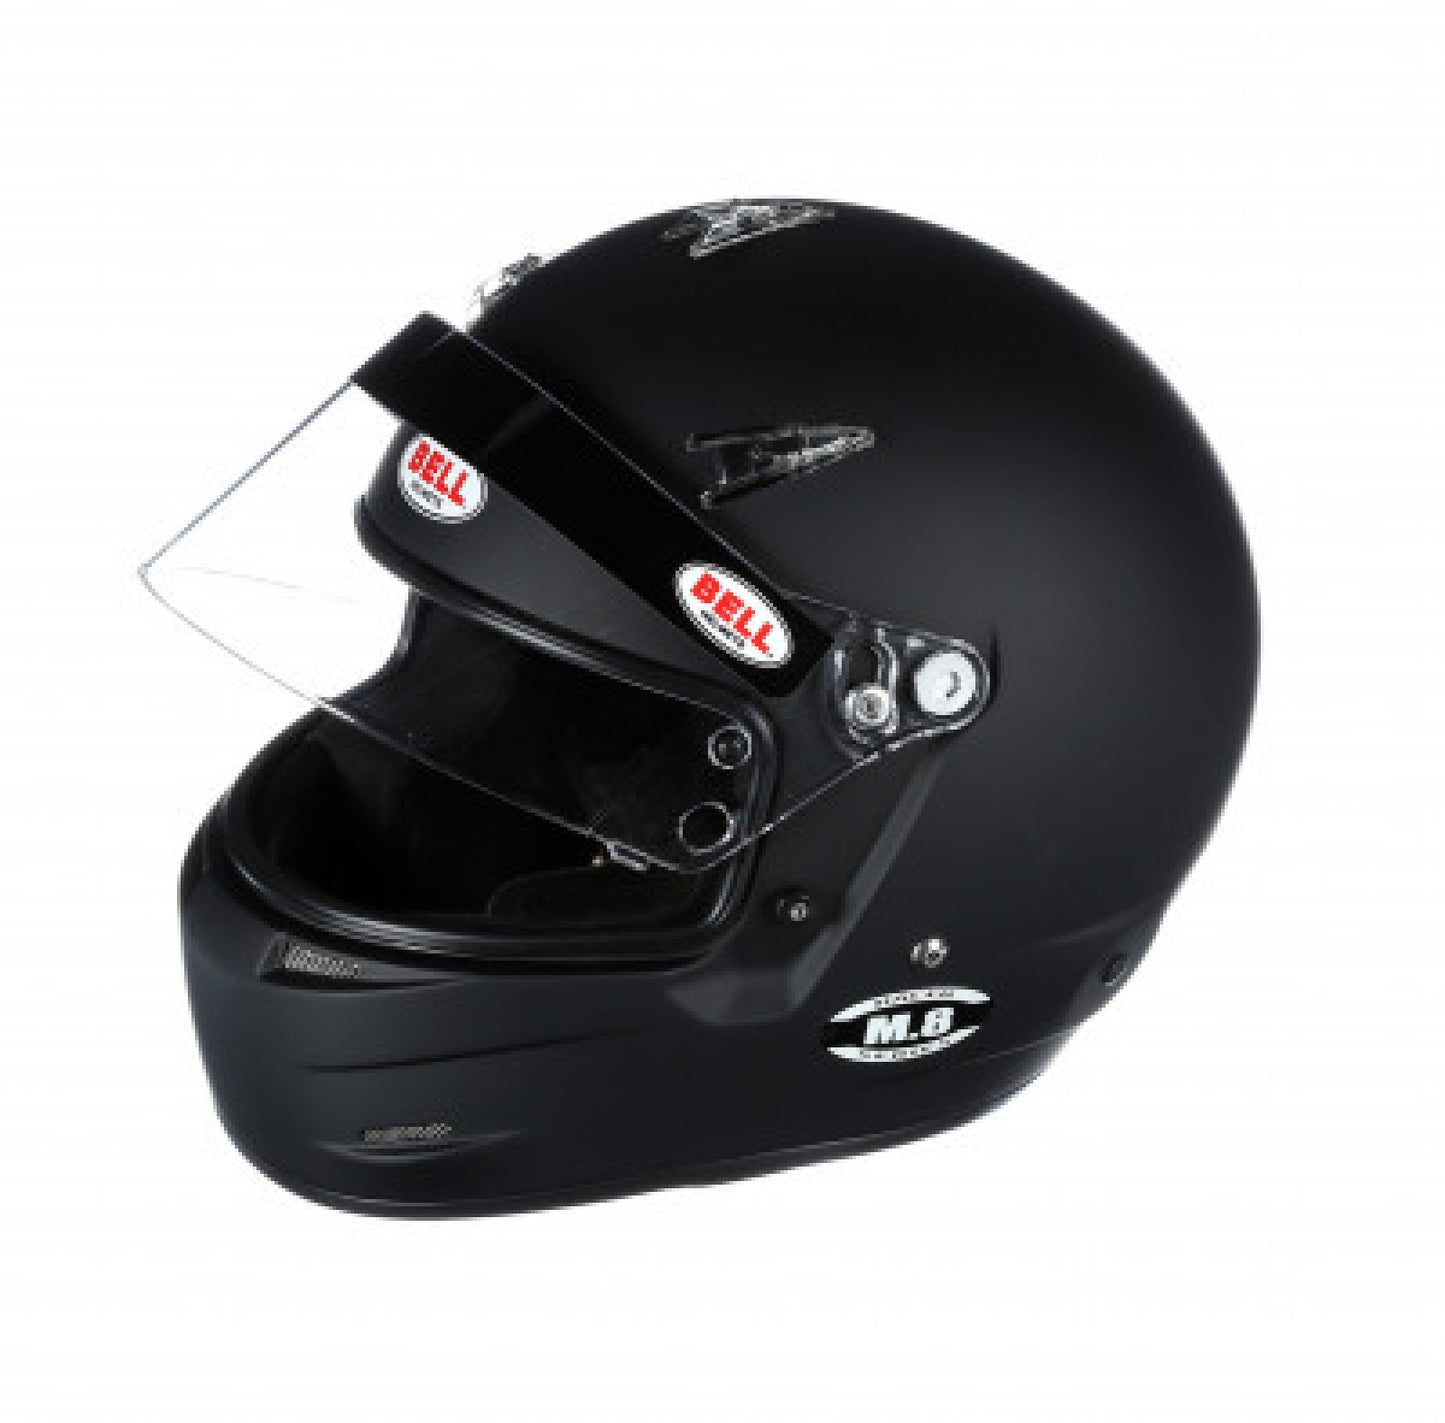 Bell M8 Racing Helmet-Matte Black Size Small 1419A13